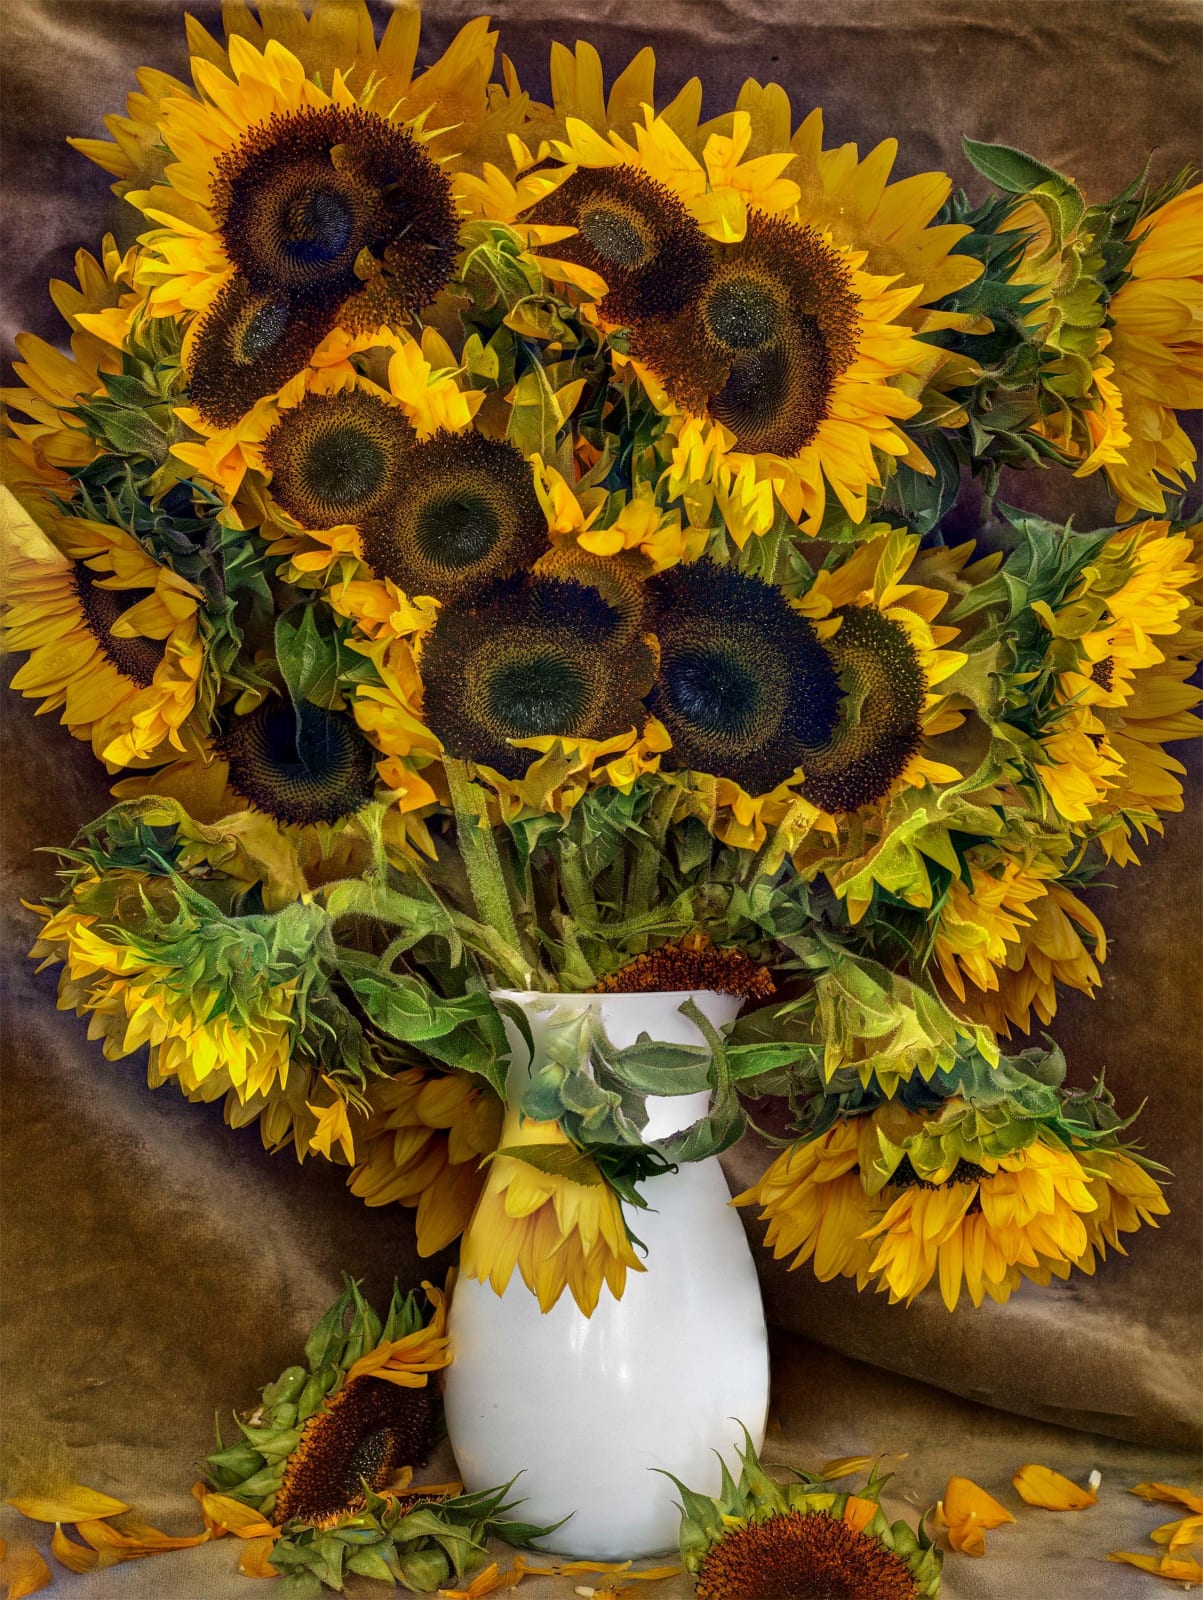 Abelardo Morell Flowers for Lisa #28 multiple exposure composite image of sunflowers in white vase